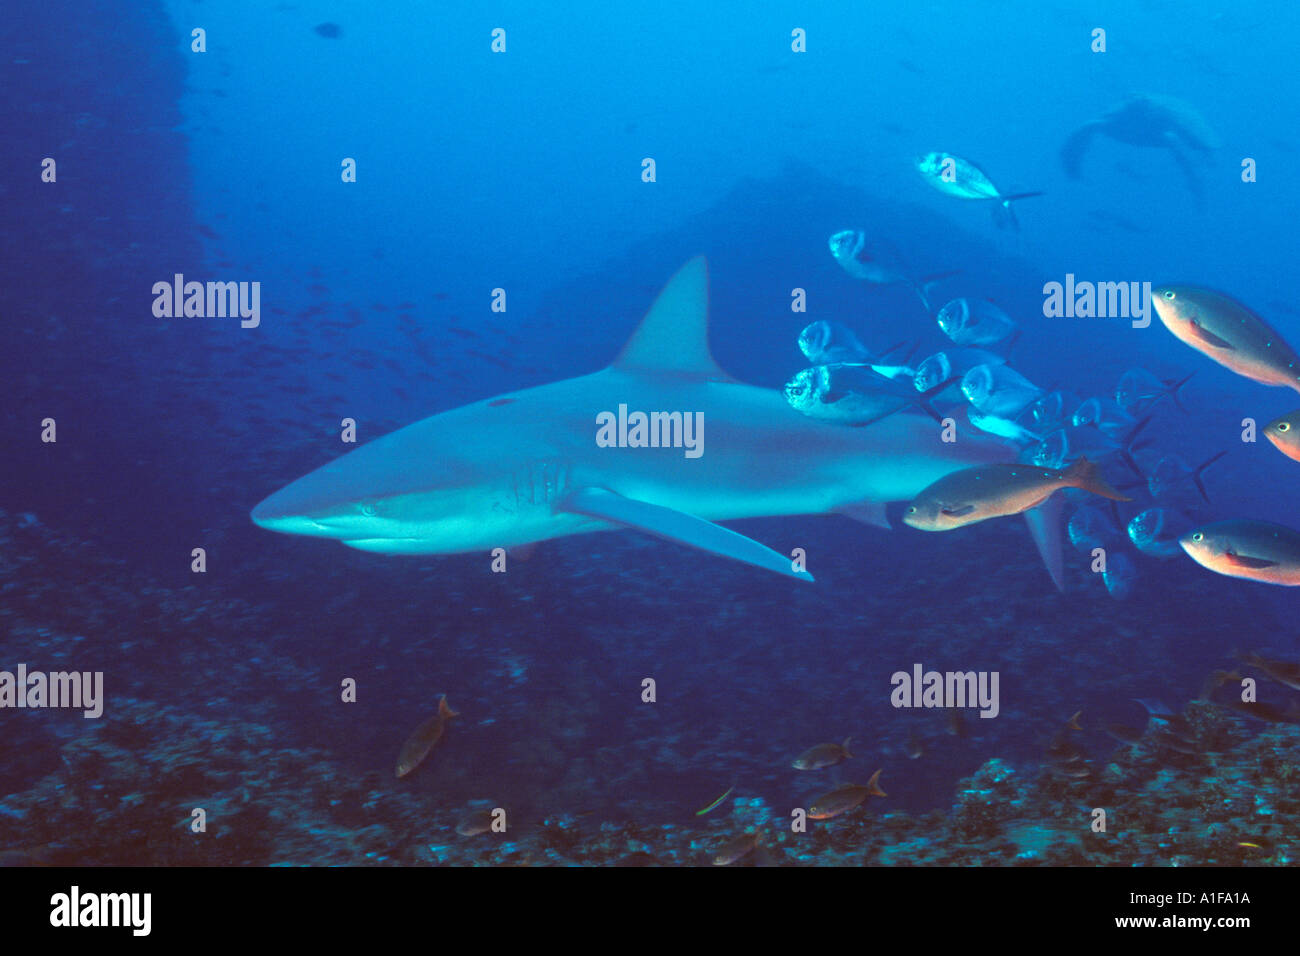 Galapagos Shark, Galapagos Islands, Eastern Pacific Ocean. Ecuador, South America. Stock Photo